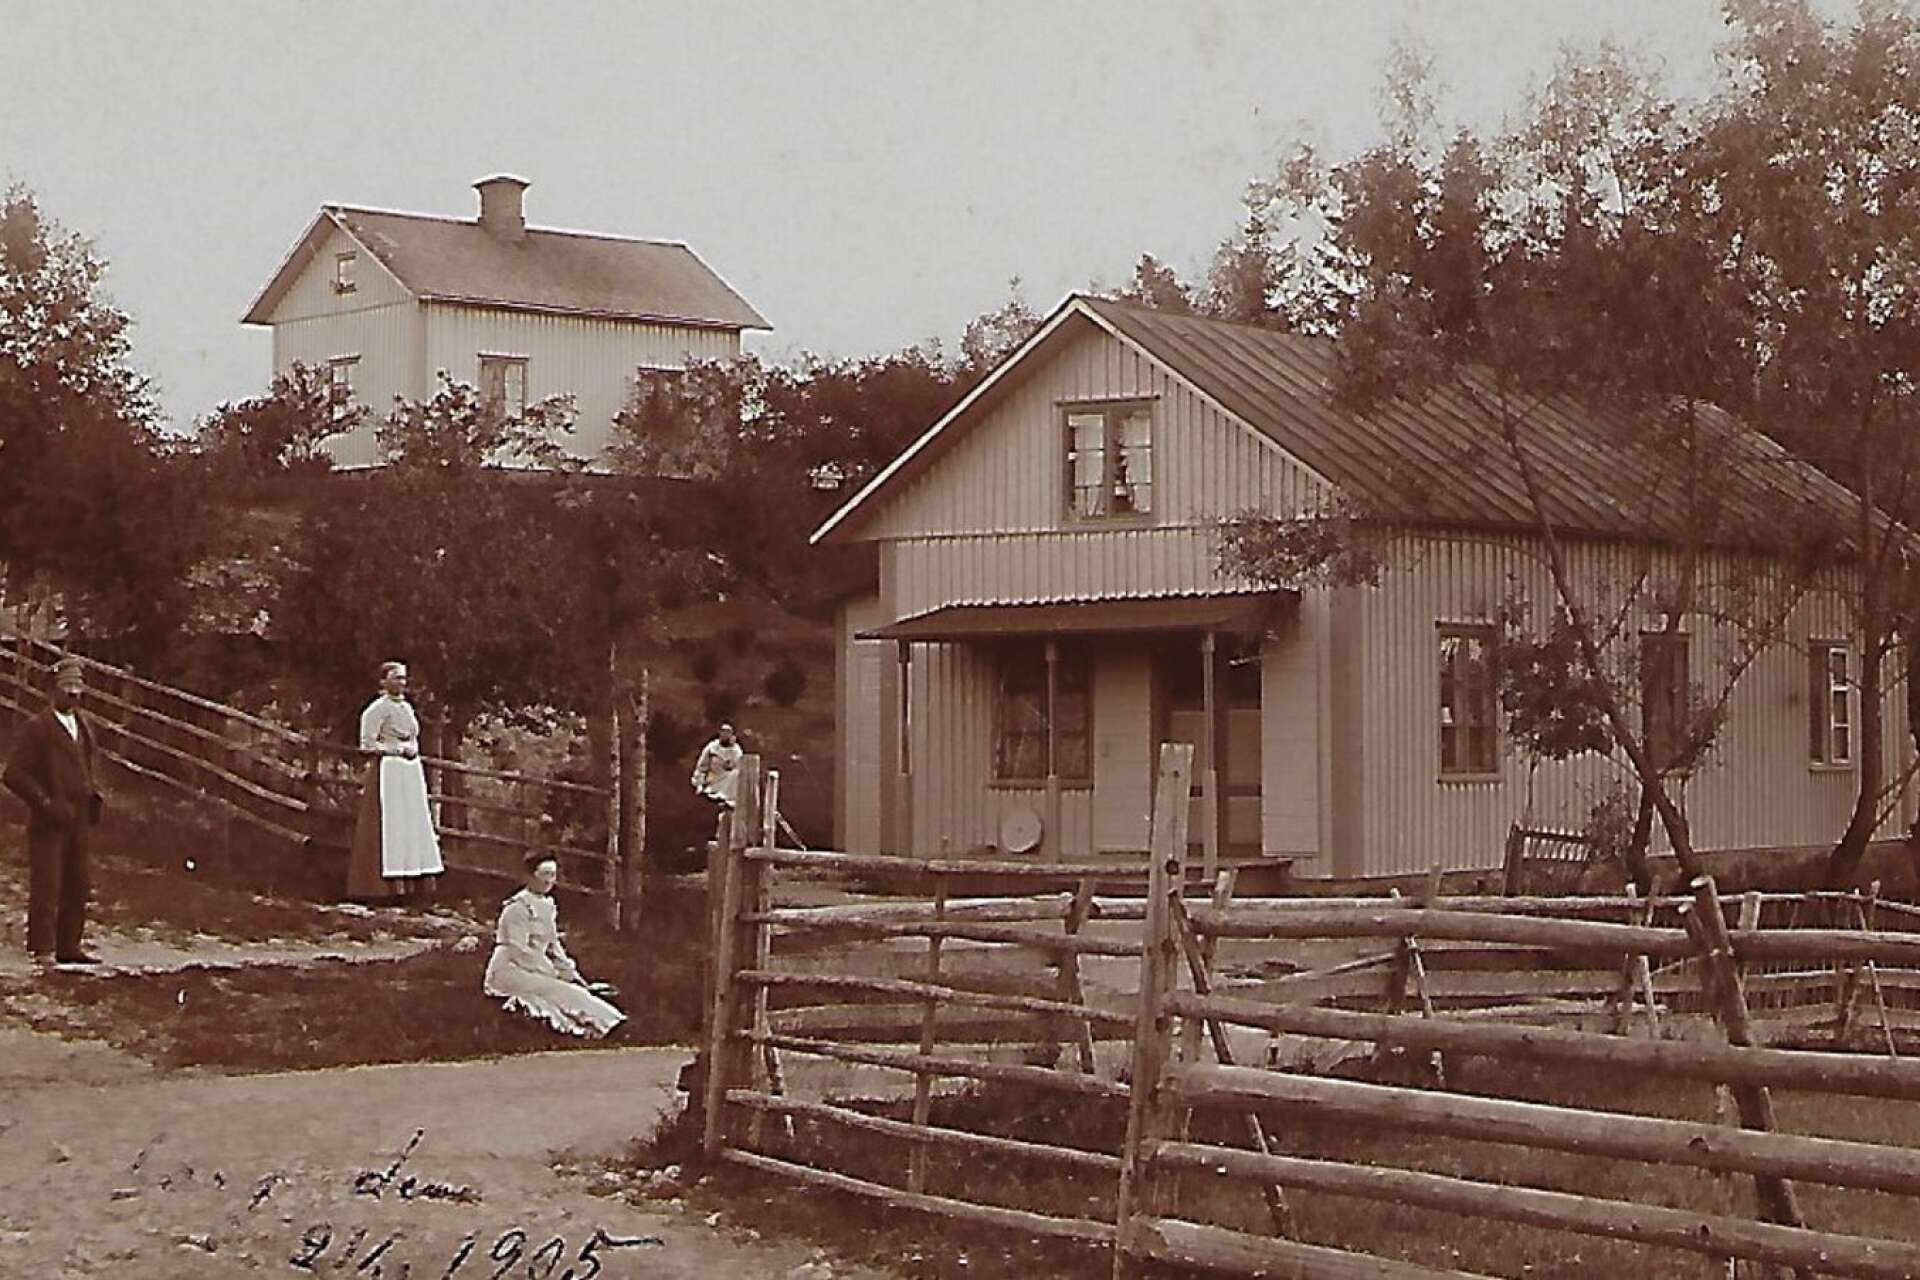 Då (1905): ”Rennstaboa” eller Hagaberg när handelsbodens första handlare Bengt Johansson med hustru Maria bedrev handel där. De startade verksamheten redan 1883. Ingången till handelsboden var på husets gavel som syns på bilden. 